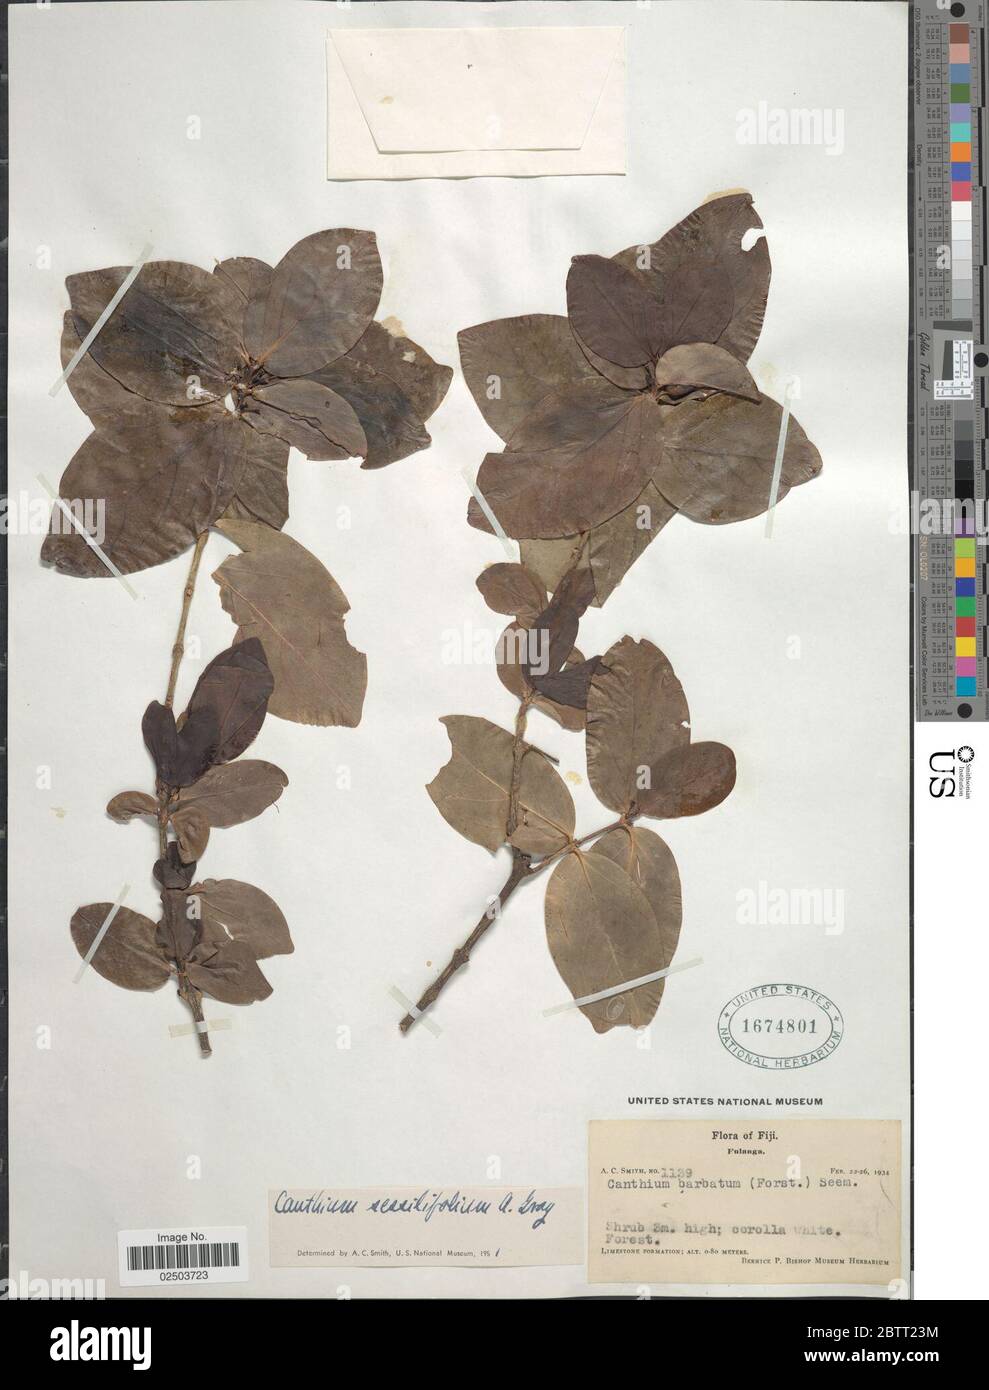 Cyclophyllum sessilifolium A Gray AC Sm SP Darwin. Stock Photo